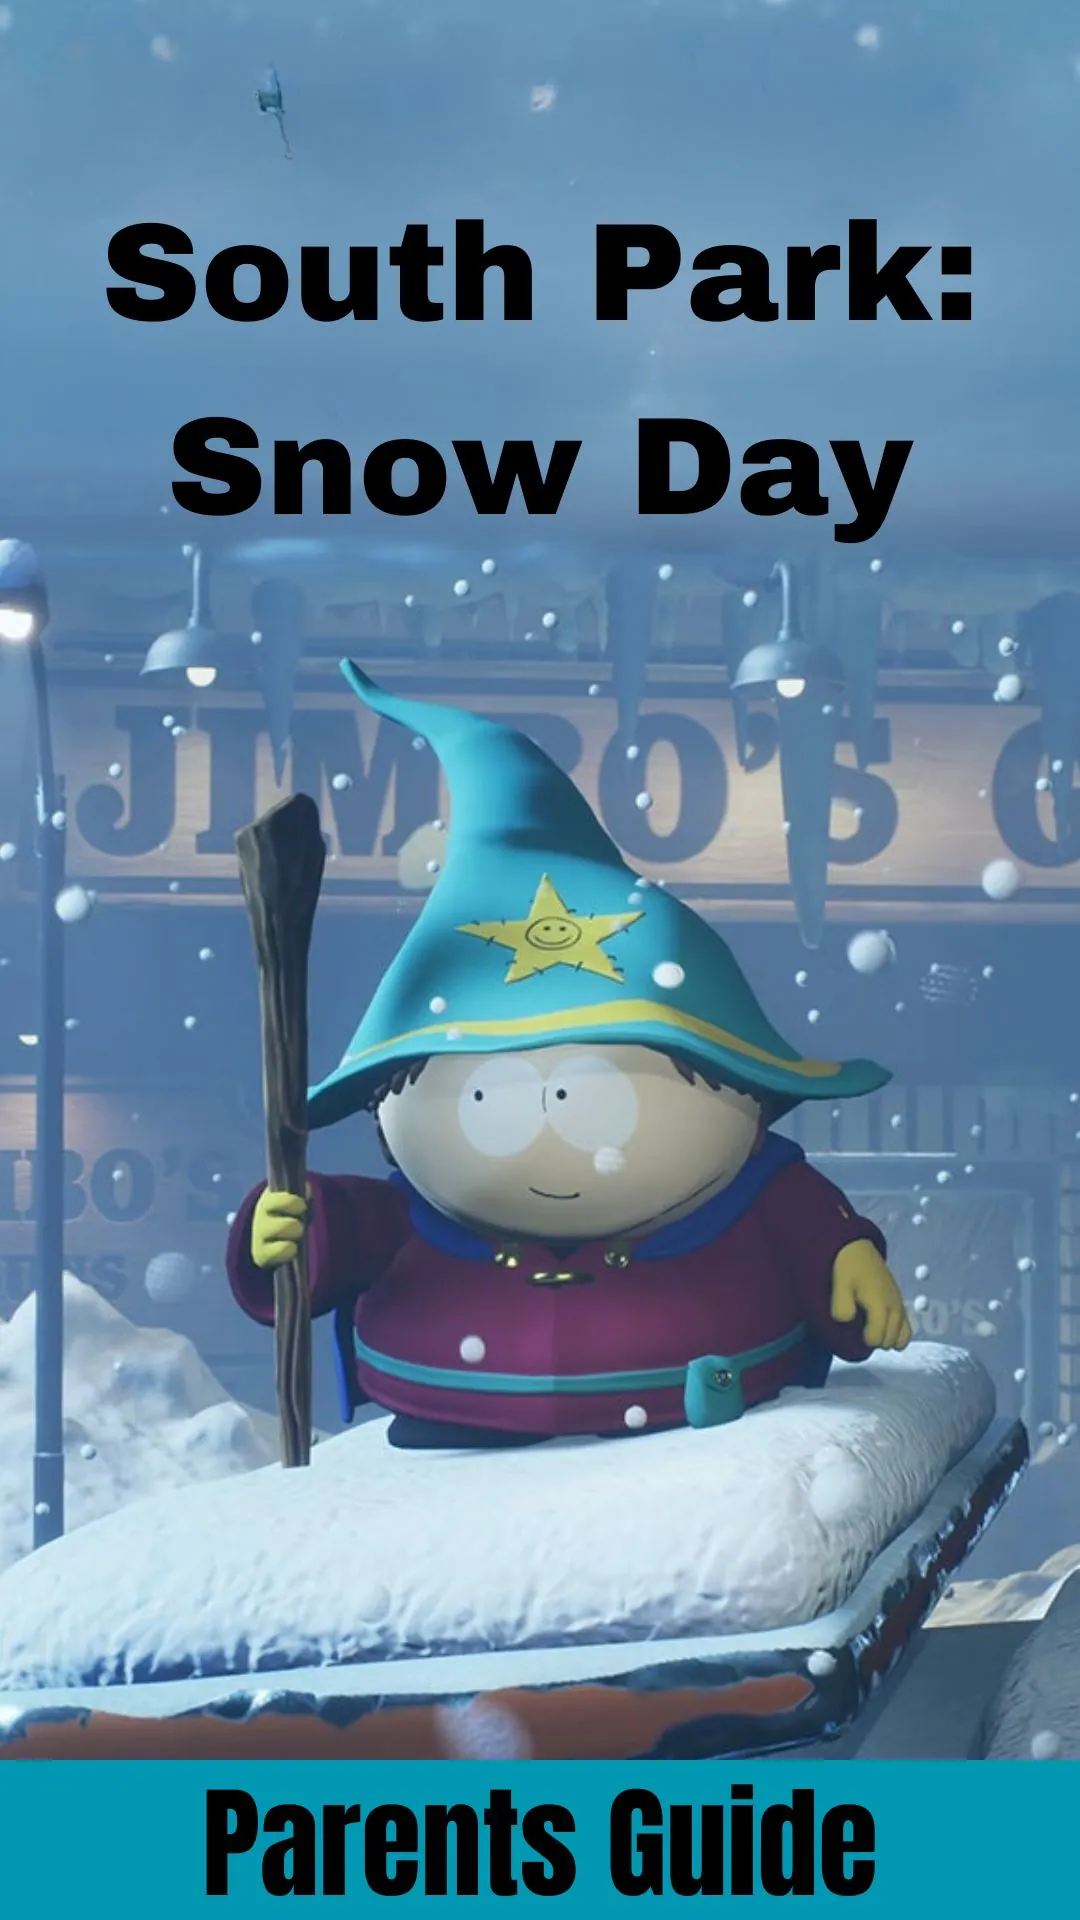 South Park Snow Day Parents Guide (1)